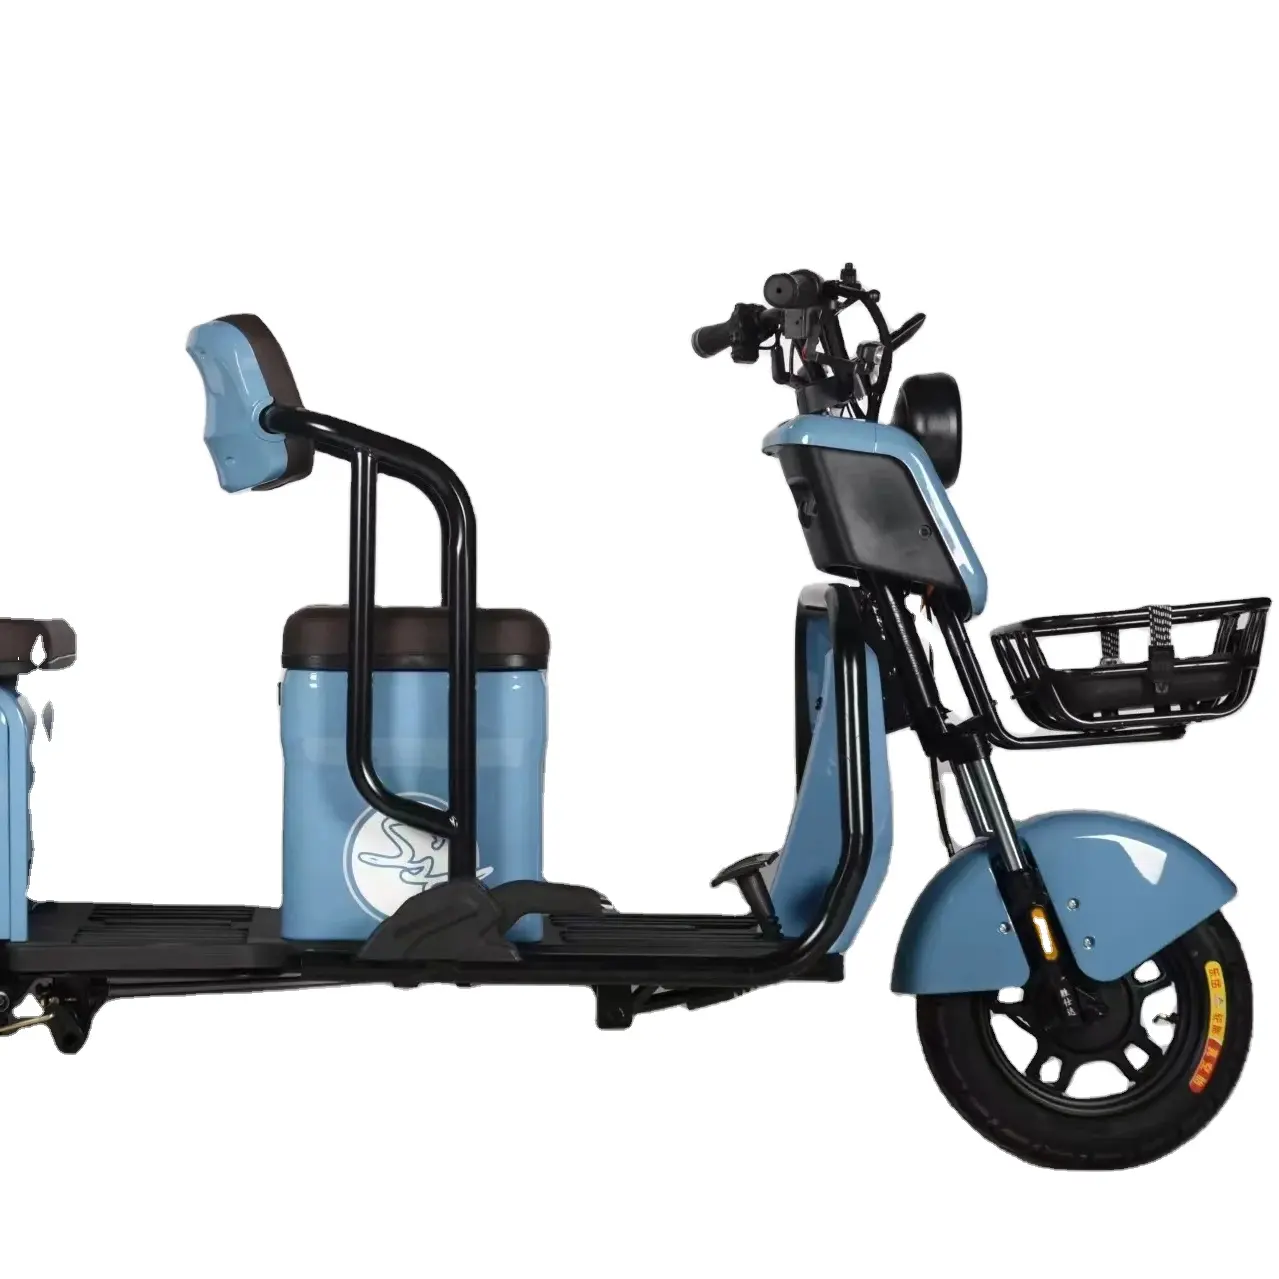 Трехколесный взрослый пассажирский дешевый Электрический трехколесный мотоцикл, рикша, полностью закрытые подвижные электрические скутеры, мото